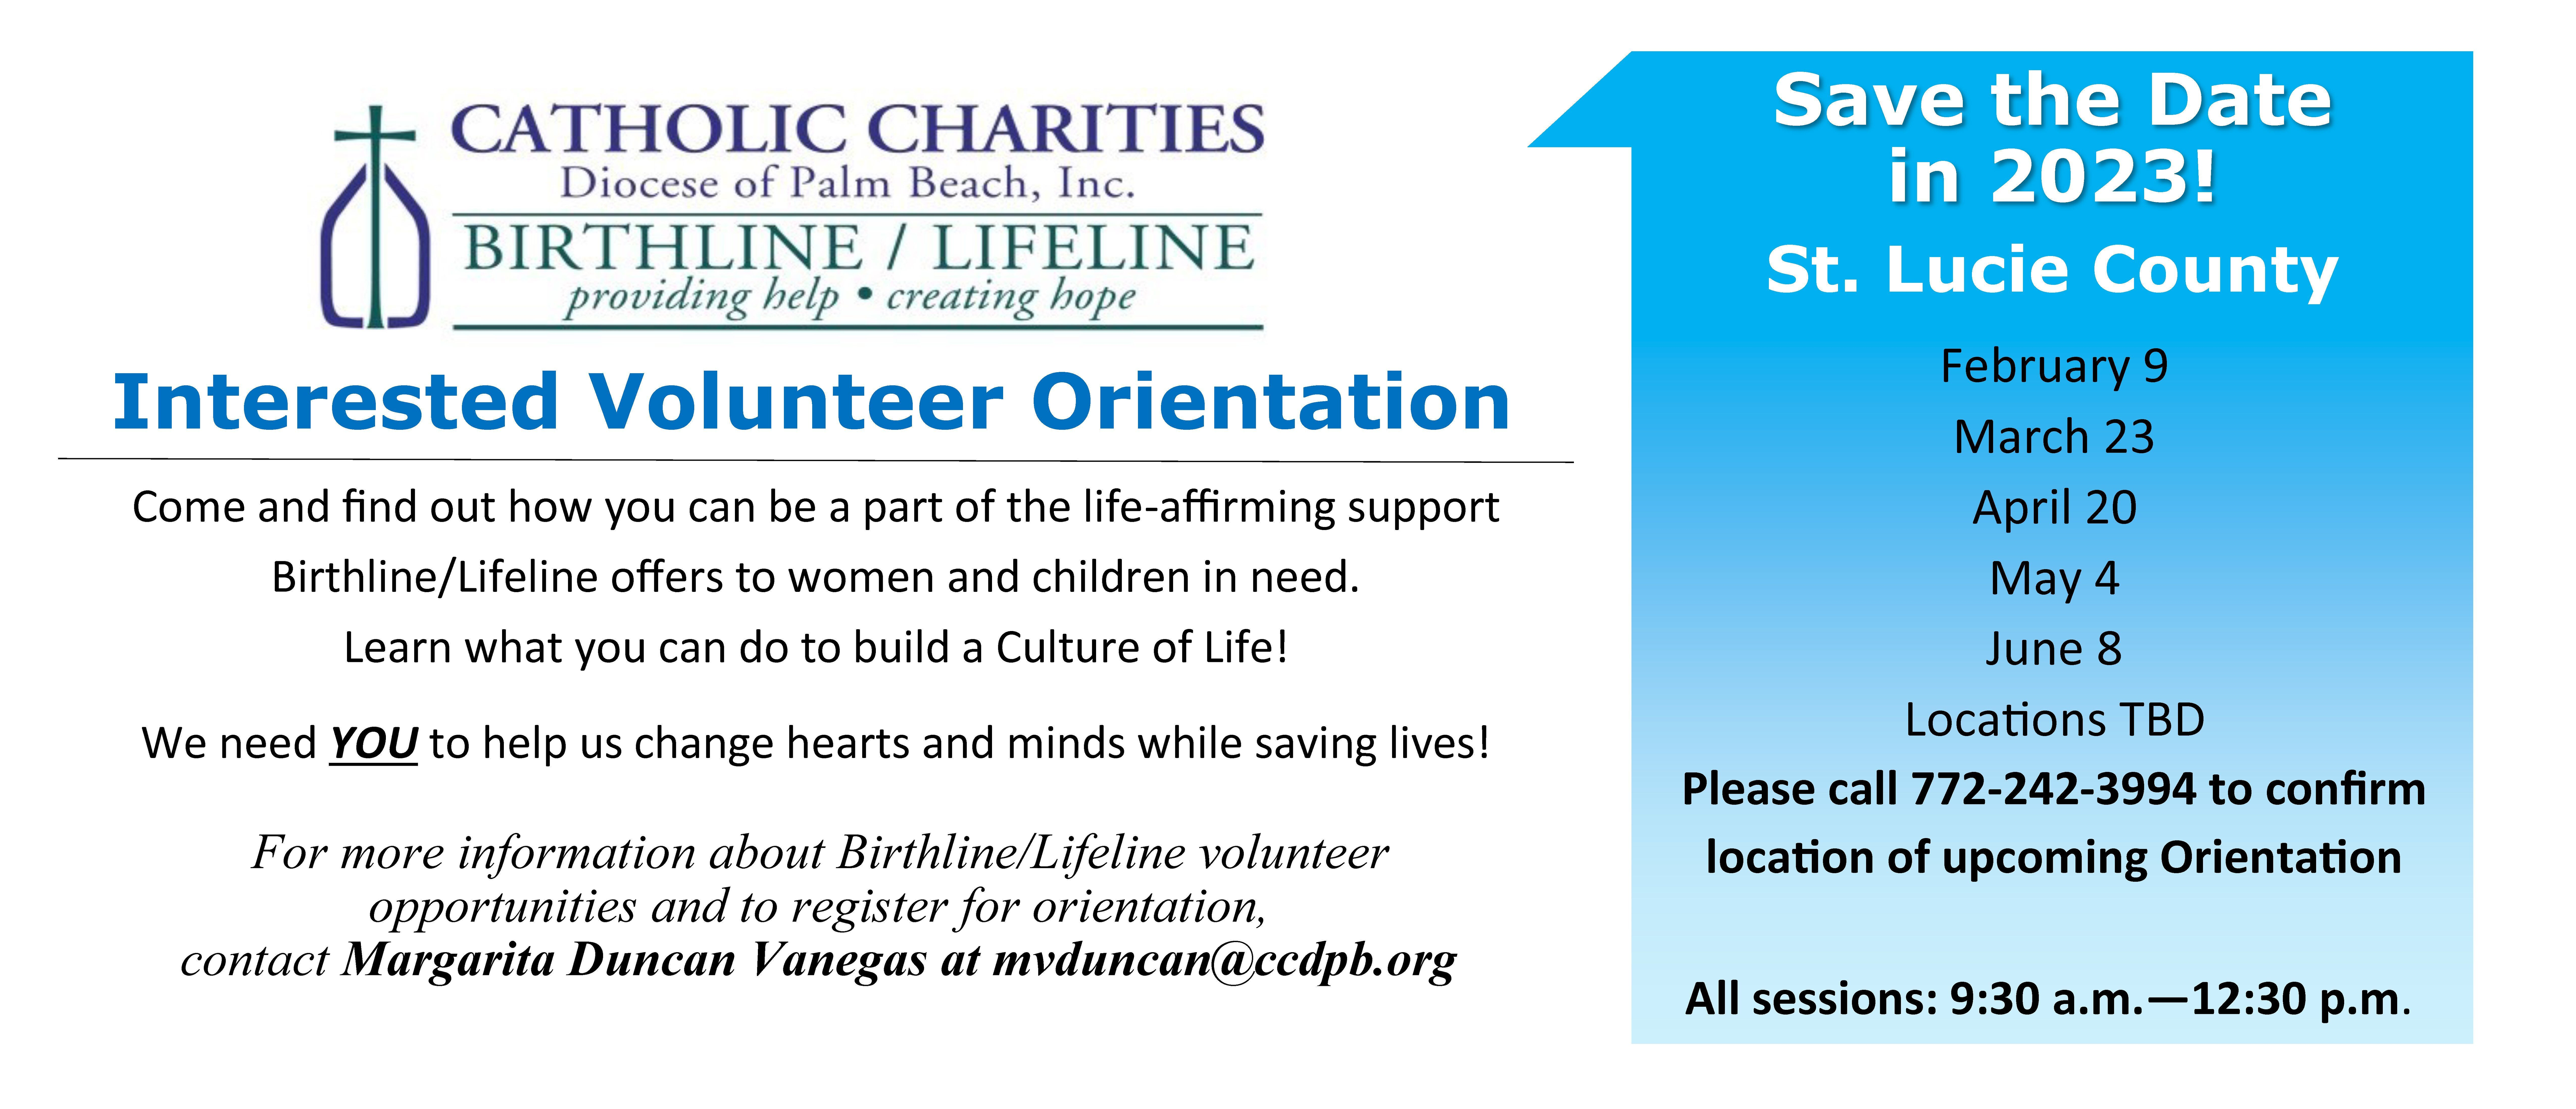 Birthline/Lifeline Volunteer Orientation